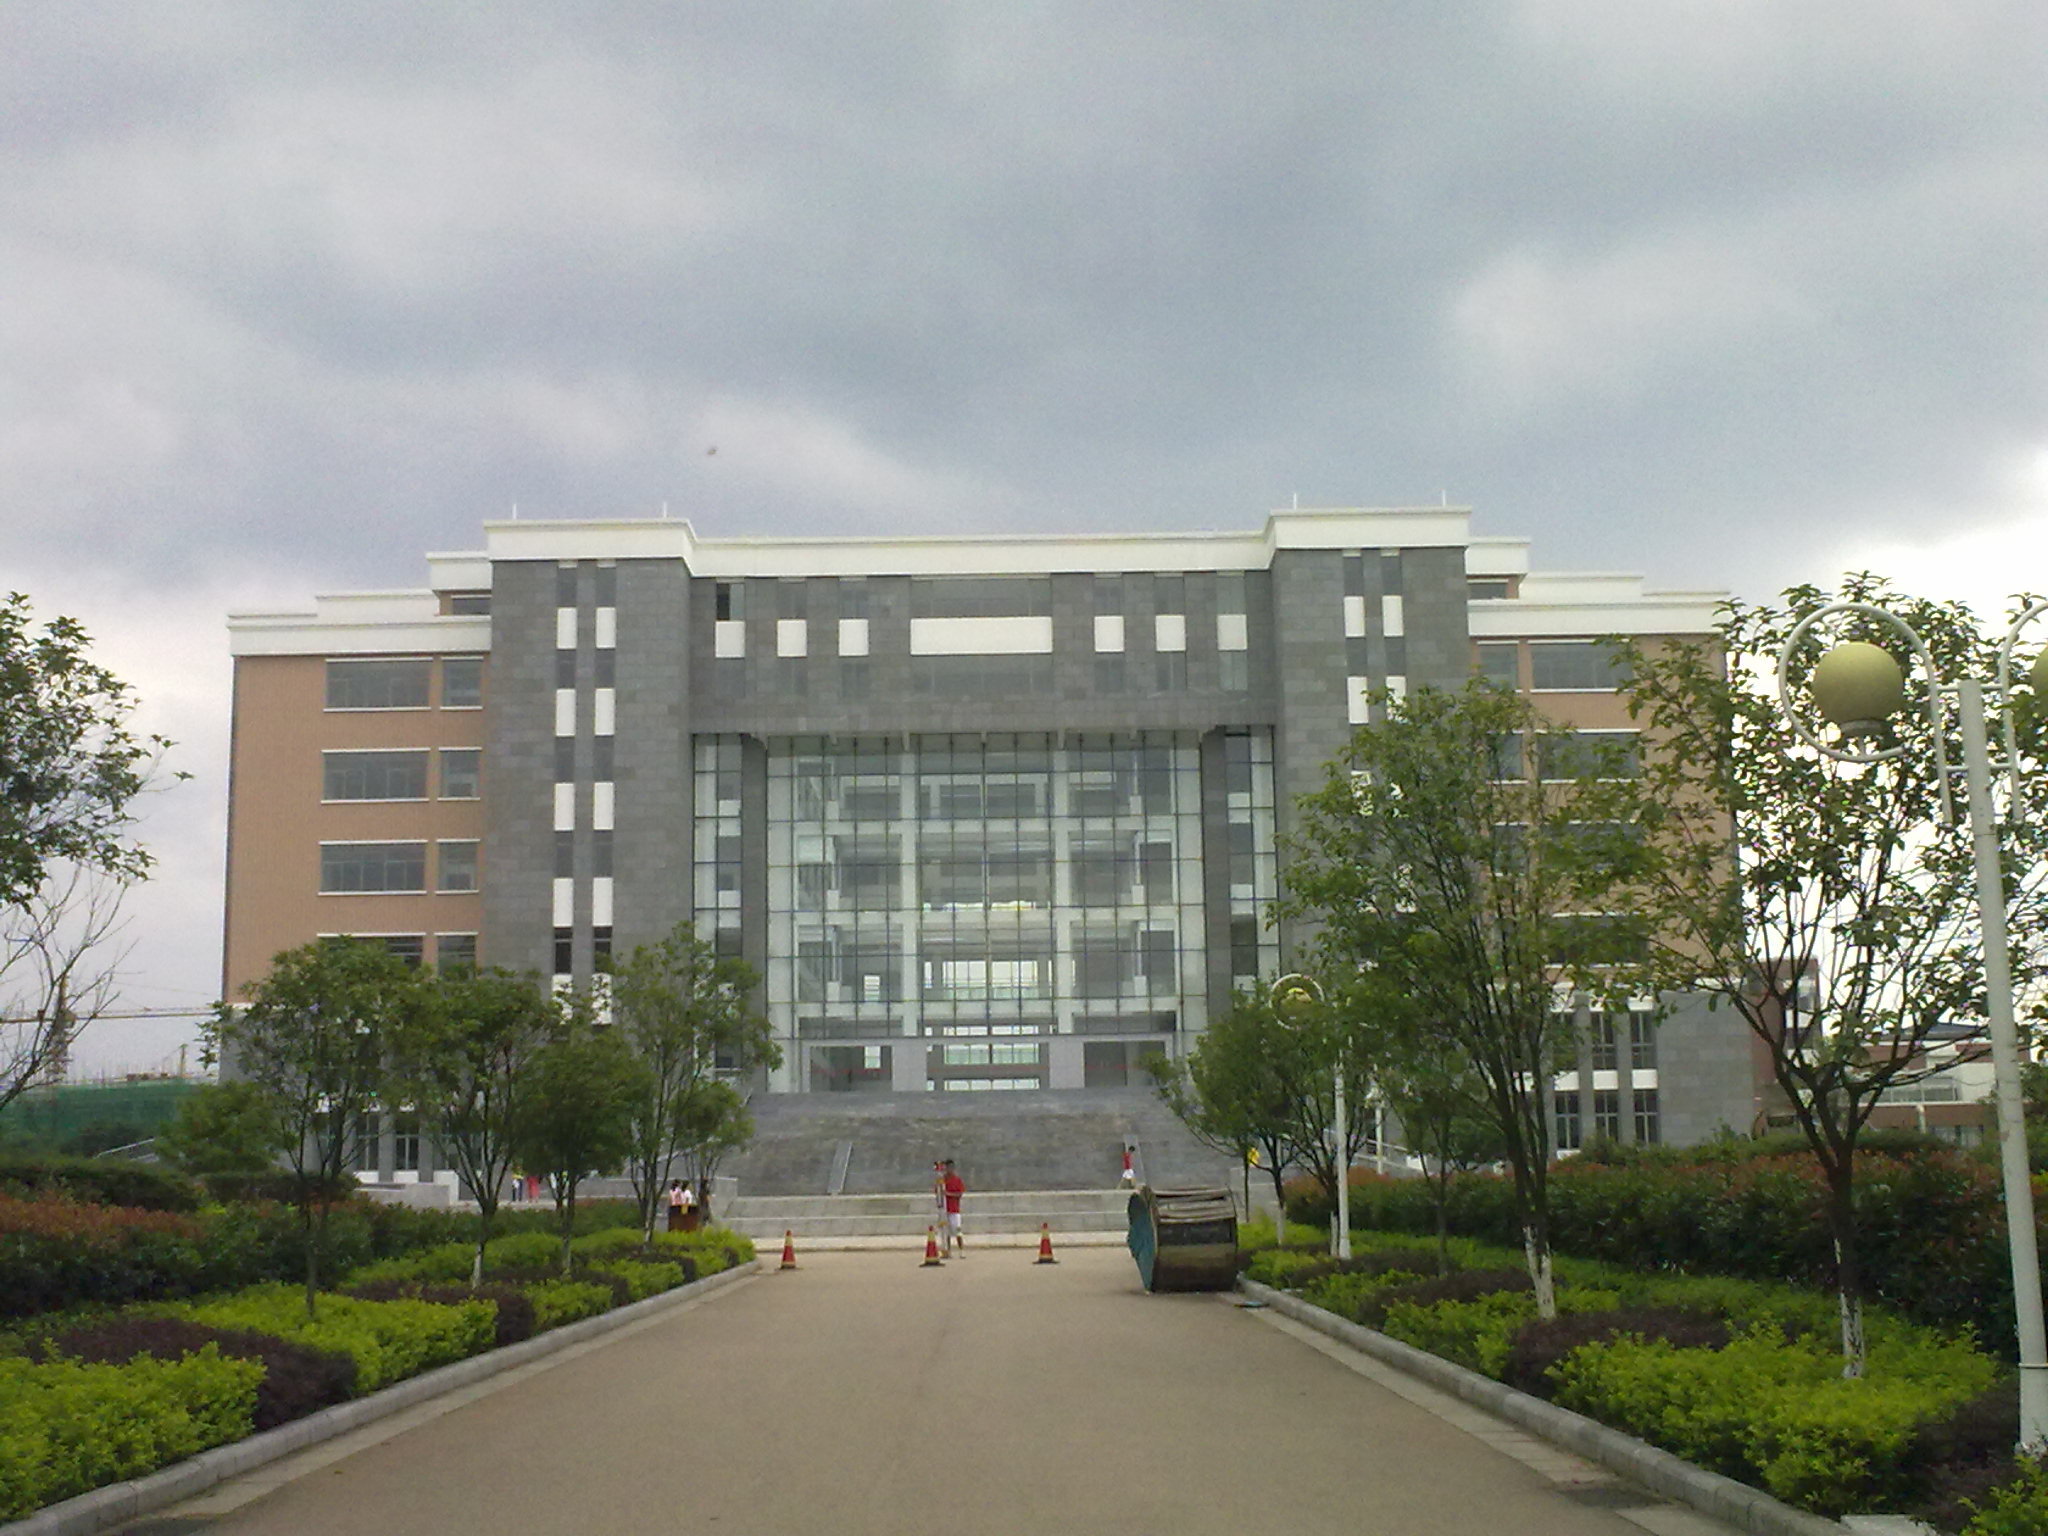 1993年12月,经原国家教委审核批准,学院更名为"桂林工学院".